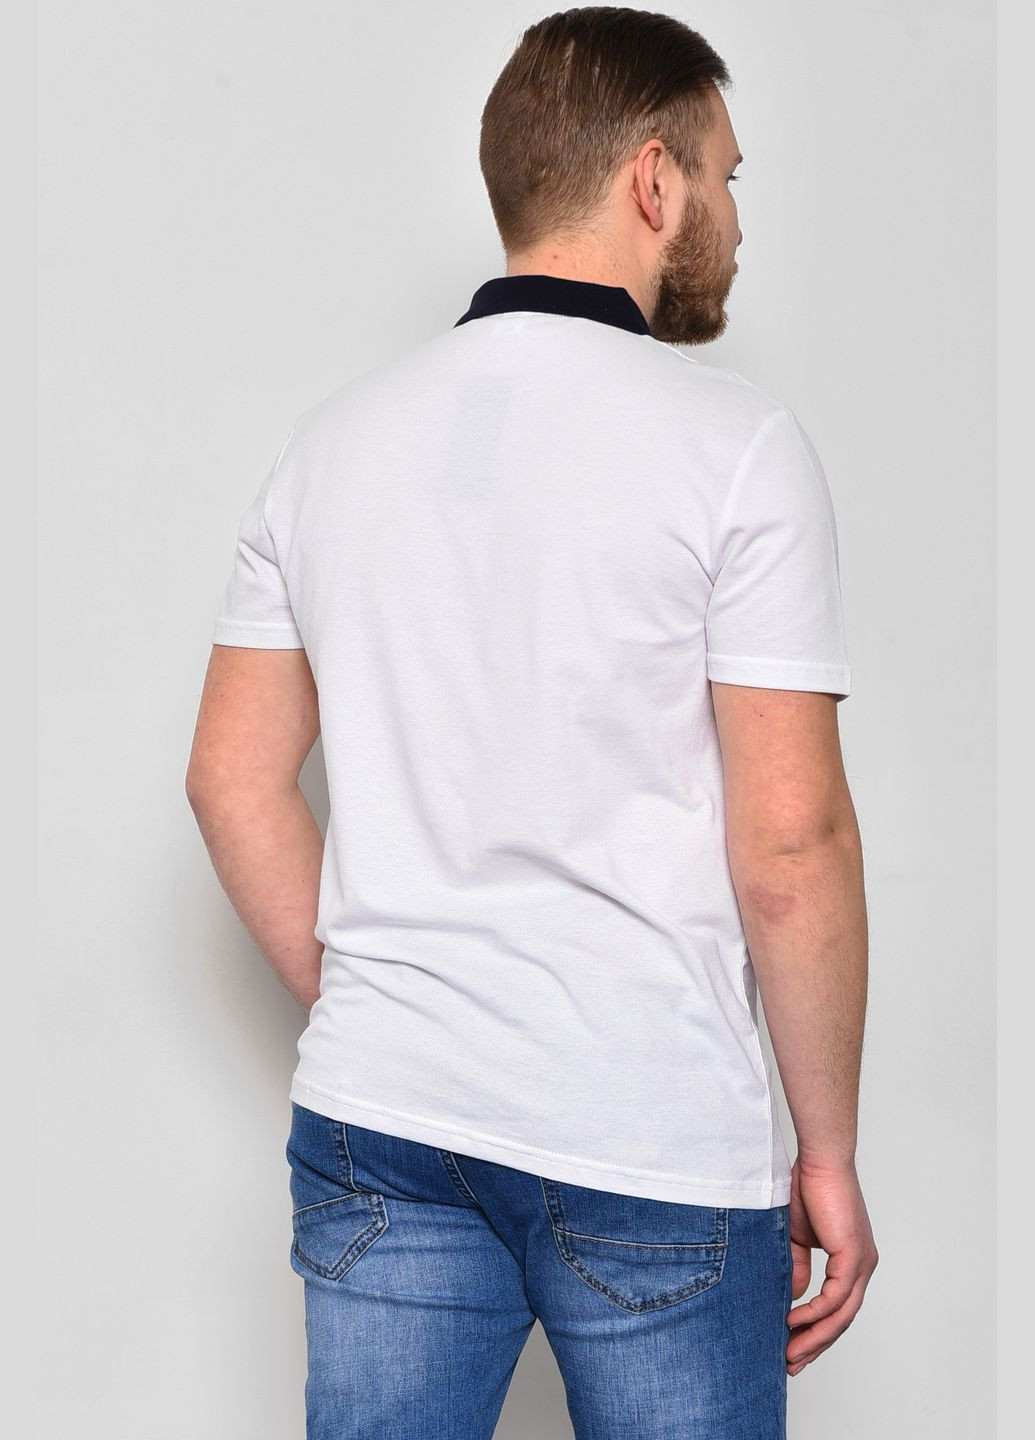 Біла футболка поло чоловіча білого кольору Let's Shop